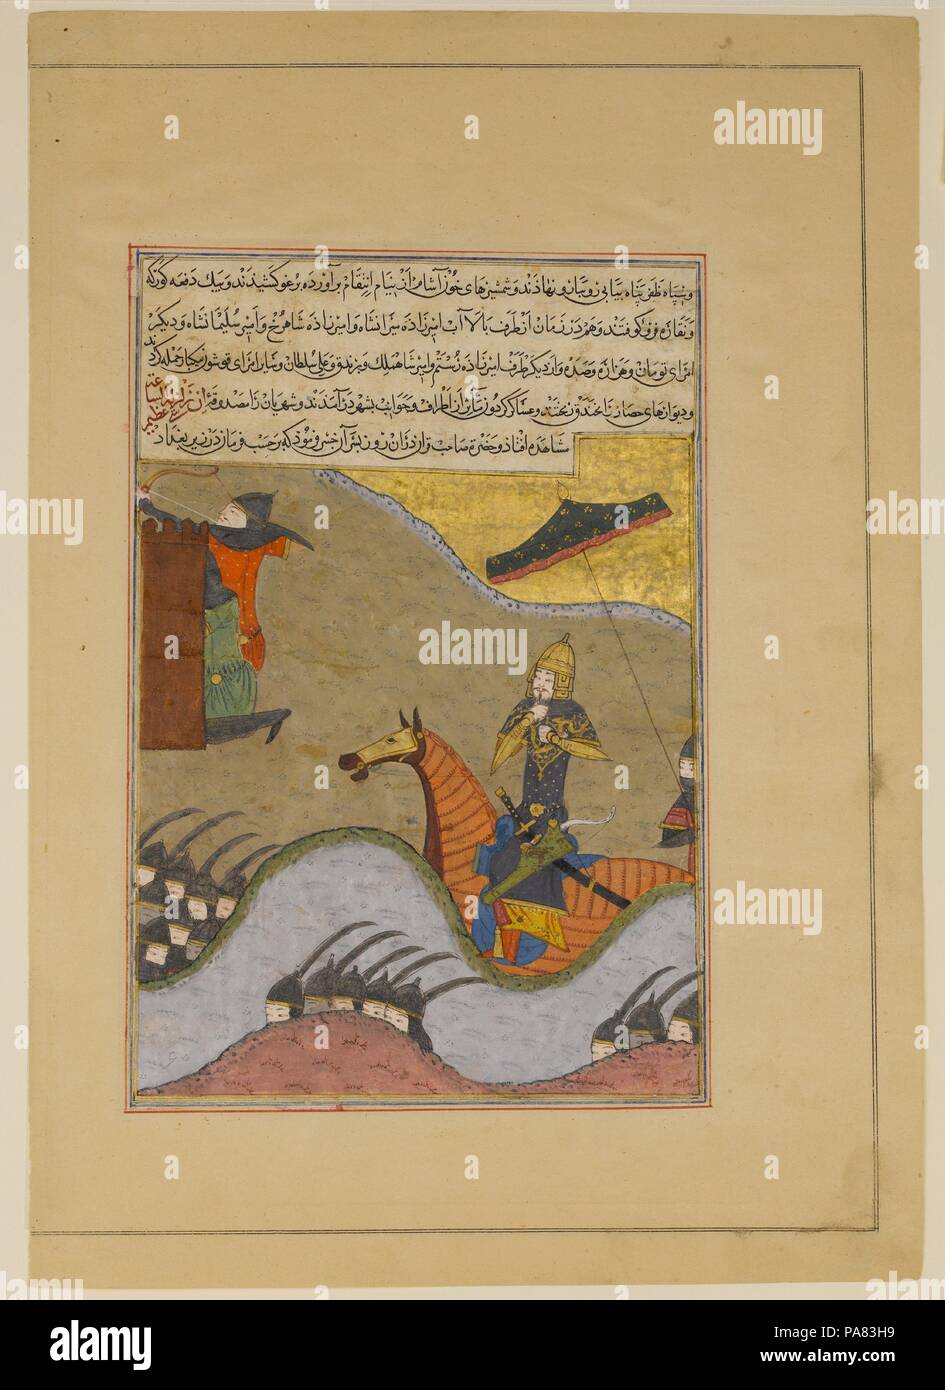 "Eroberung von Bagdad von Timur', Folio aus einem Zafarnama (Buch der Siege). Artist: Gemälde von Unbekannt. Autor: Sharaf al-Din 'Ali Yazdi (1424-54). Kalligraph: Ya'qub ibn Hasan, bekannt als Siraj al-husaini. Abmessungen: 11 3/8 x 8 in. (28,9 x 20,3 cm). Datum: Dhu'l-Hijja 839 A.H./A.D. Juni-juli 1436. Dieses Folio einmal illustriert ein Manuskript der Zafarnama, eine Biographie des Herrschers Timur im Auftrag von seinem Enkel Ibrahim Sultan. Der Text preist Timurs viele Siege auf dem Schlachtfeld, einschließlich seiner 1401 Belagerung von Bagdad, hier dargestellt. Die markant Spare, aber dennoch höchst animierten Angula Stockfoto